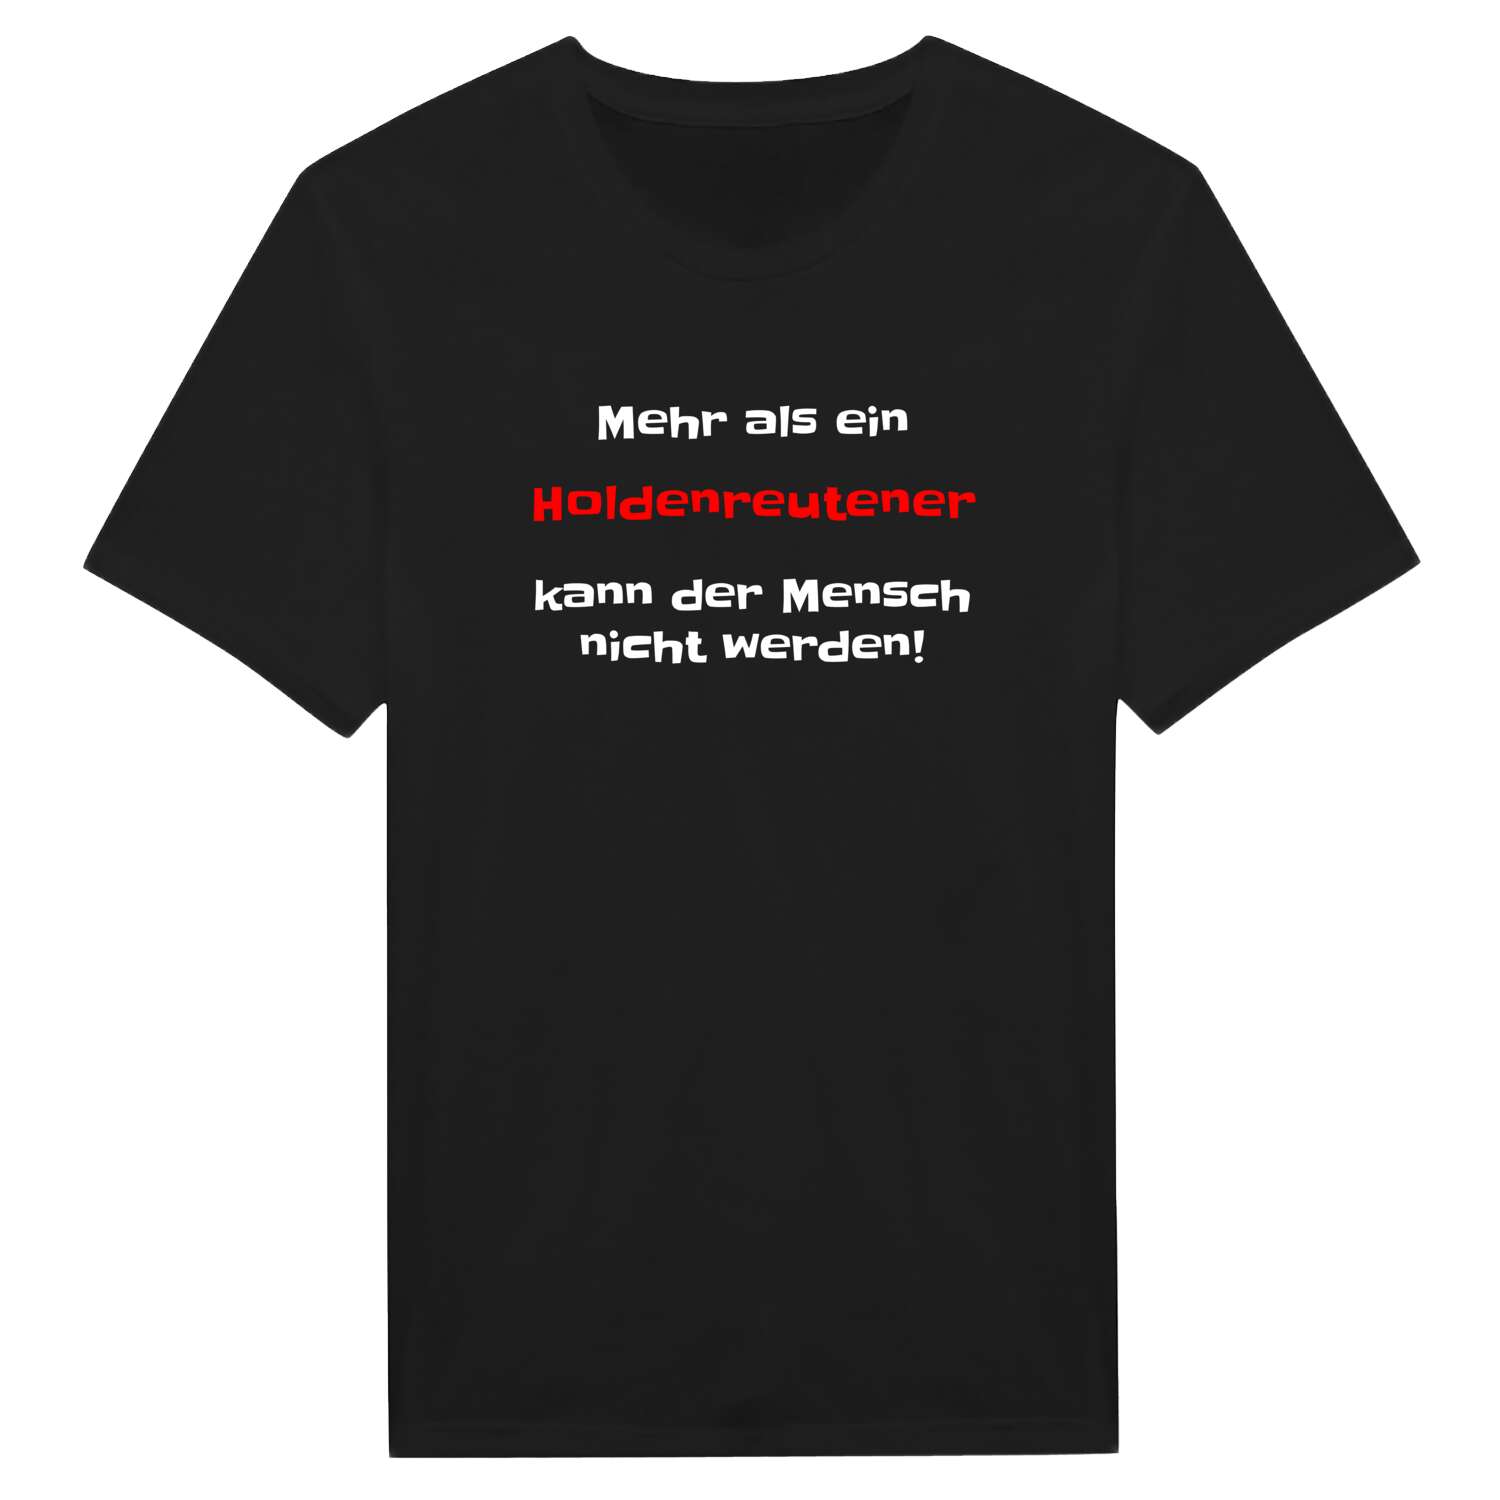 Holdenreute T-Shirt »Mehr als ein«